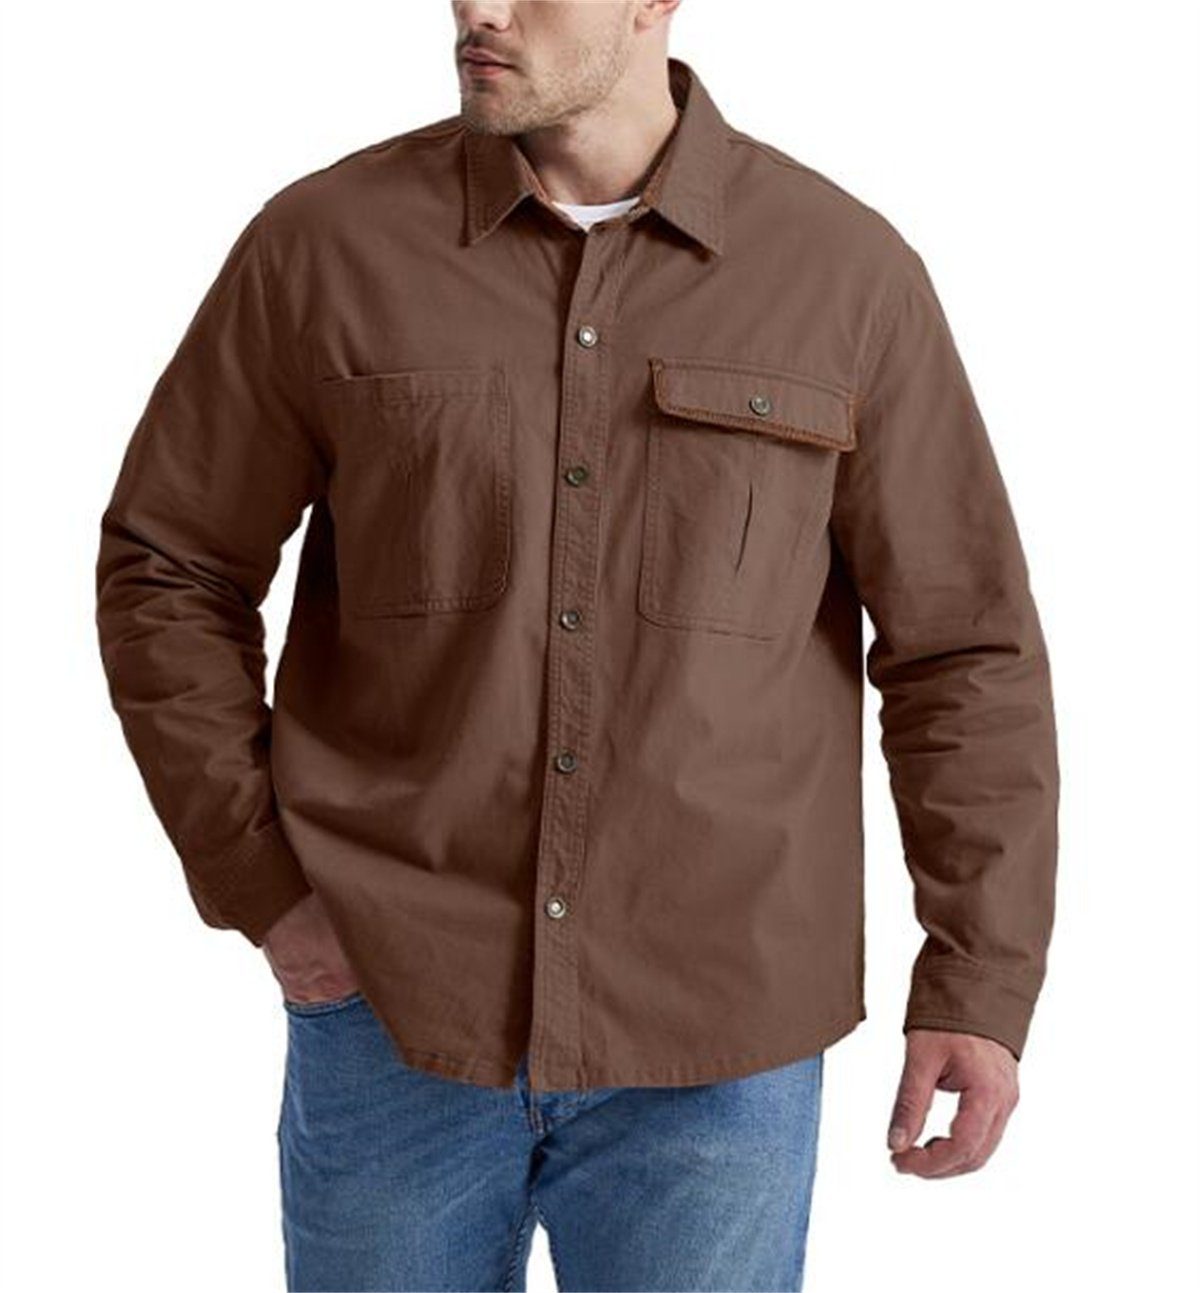 Discaver Sweatshirt Übergroßes, übergroßes Hemd aus Cord in Kontrastfarbe mit Kragen braun